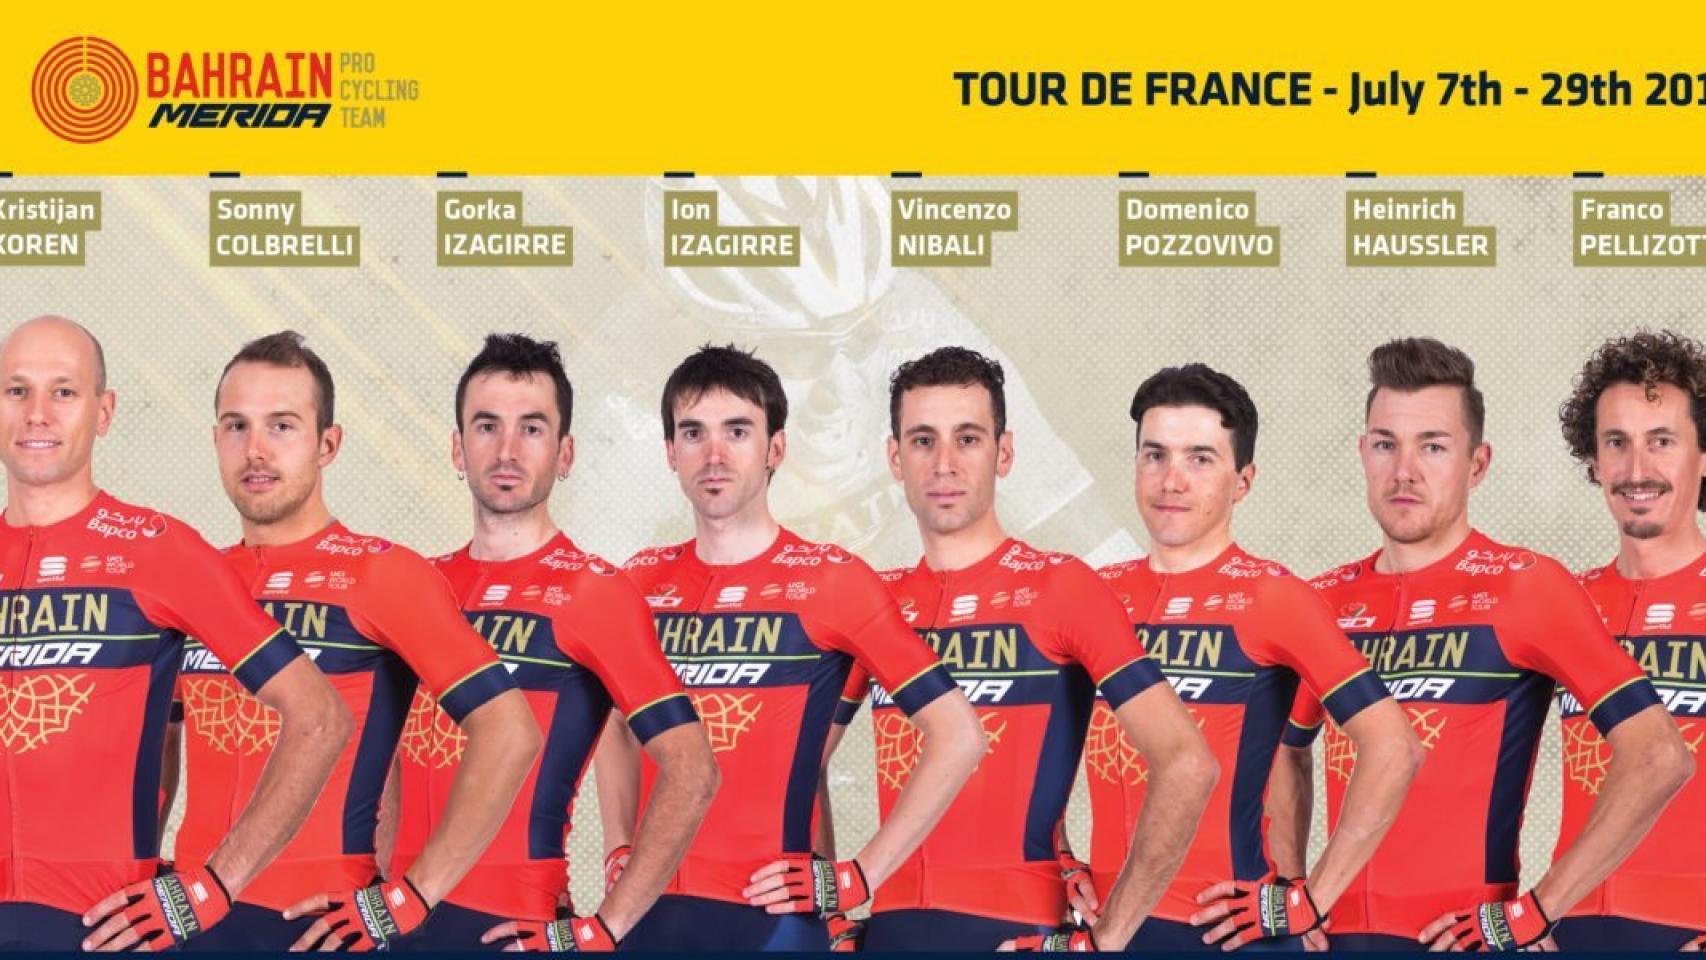 Equipo de Bahrain Merida para el Tour de Francia 2018